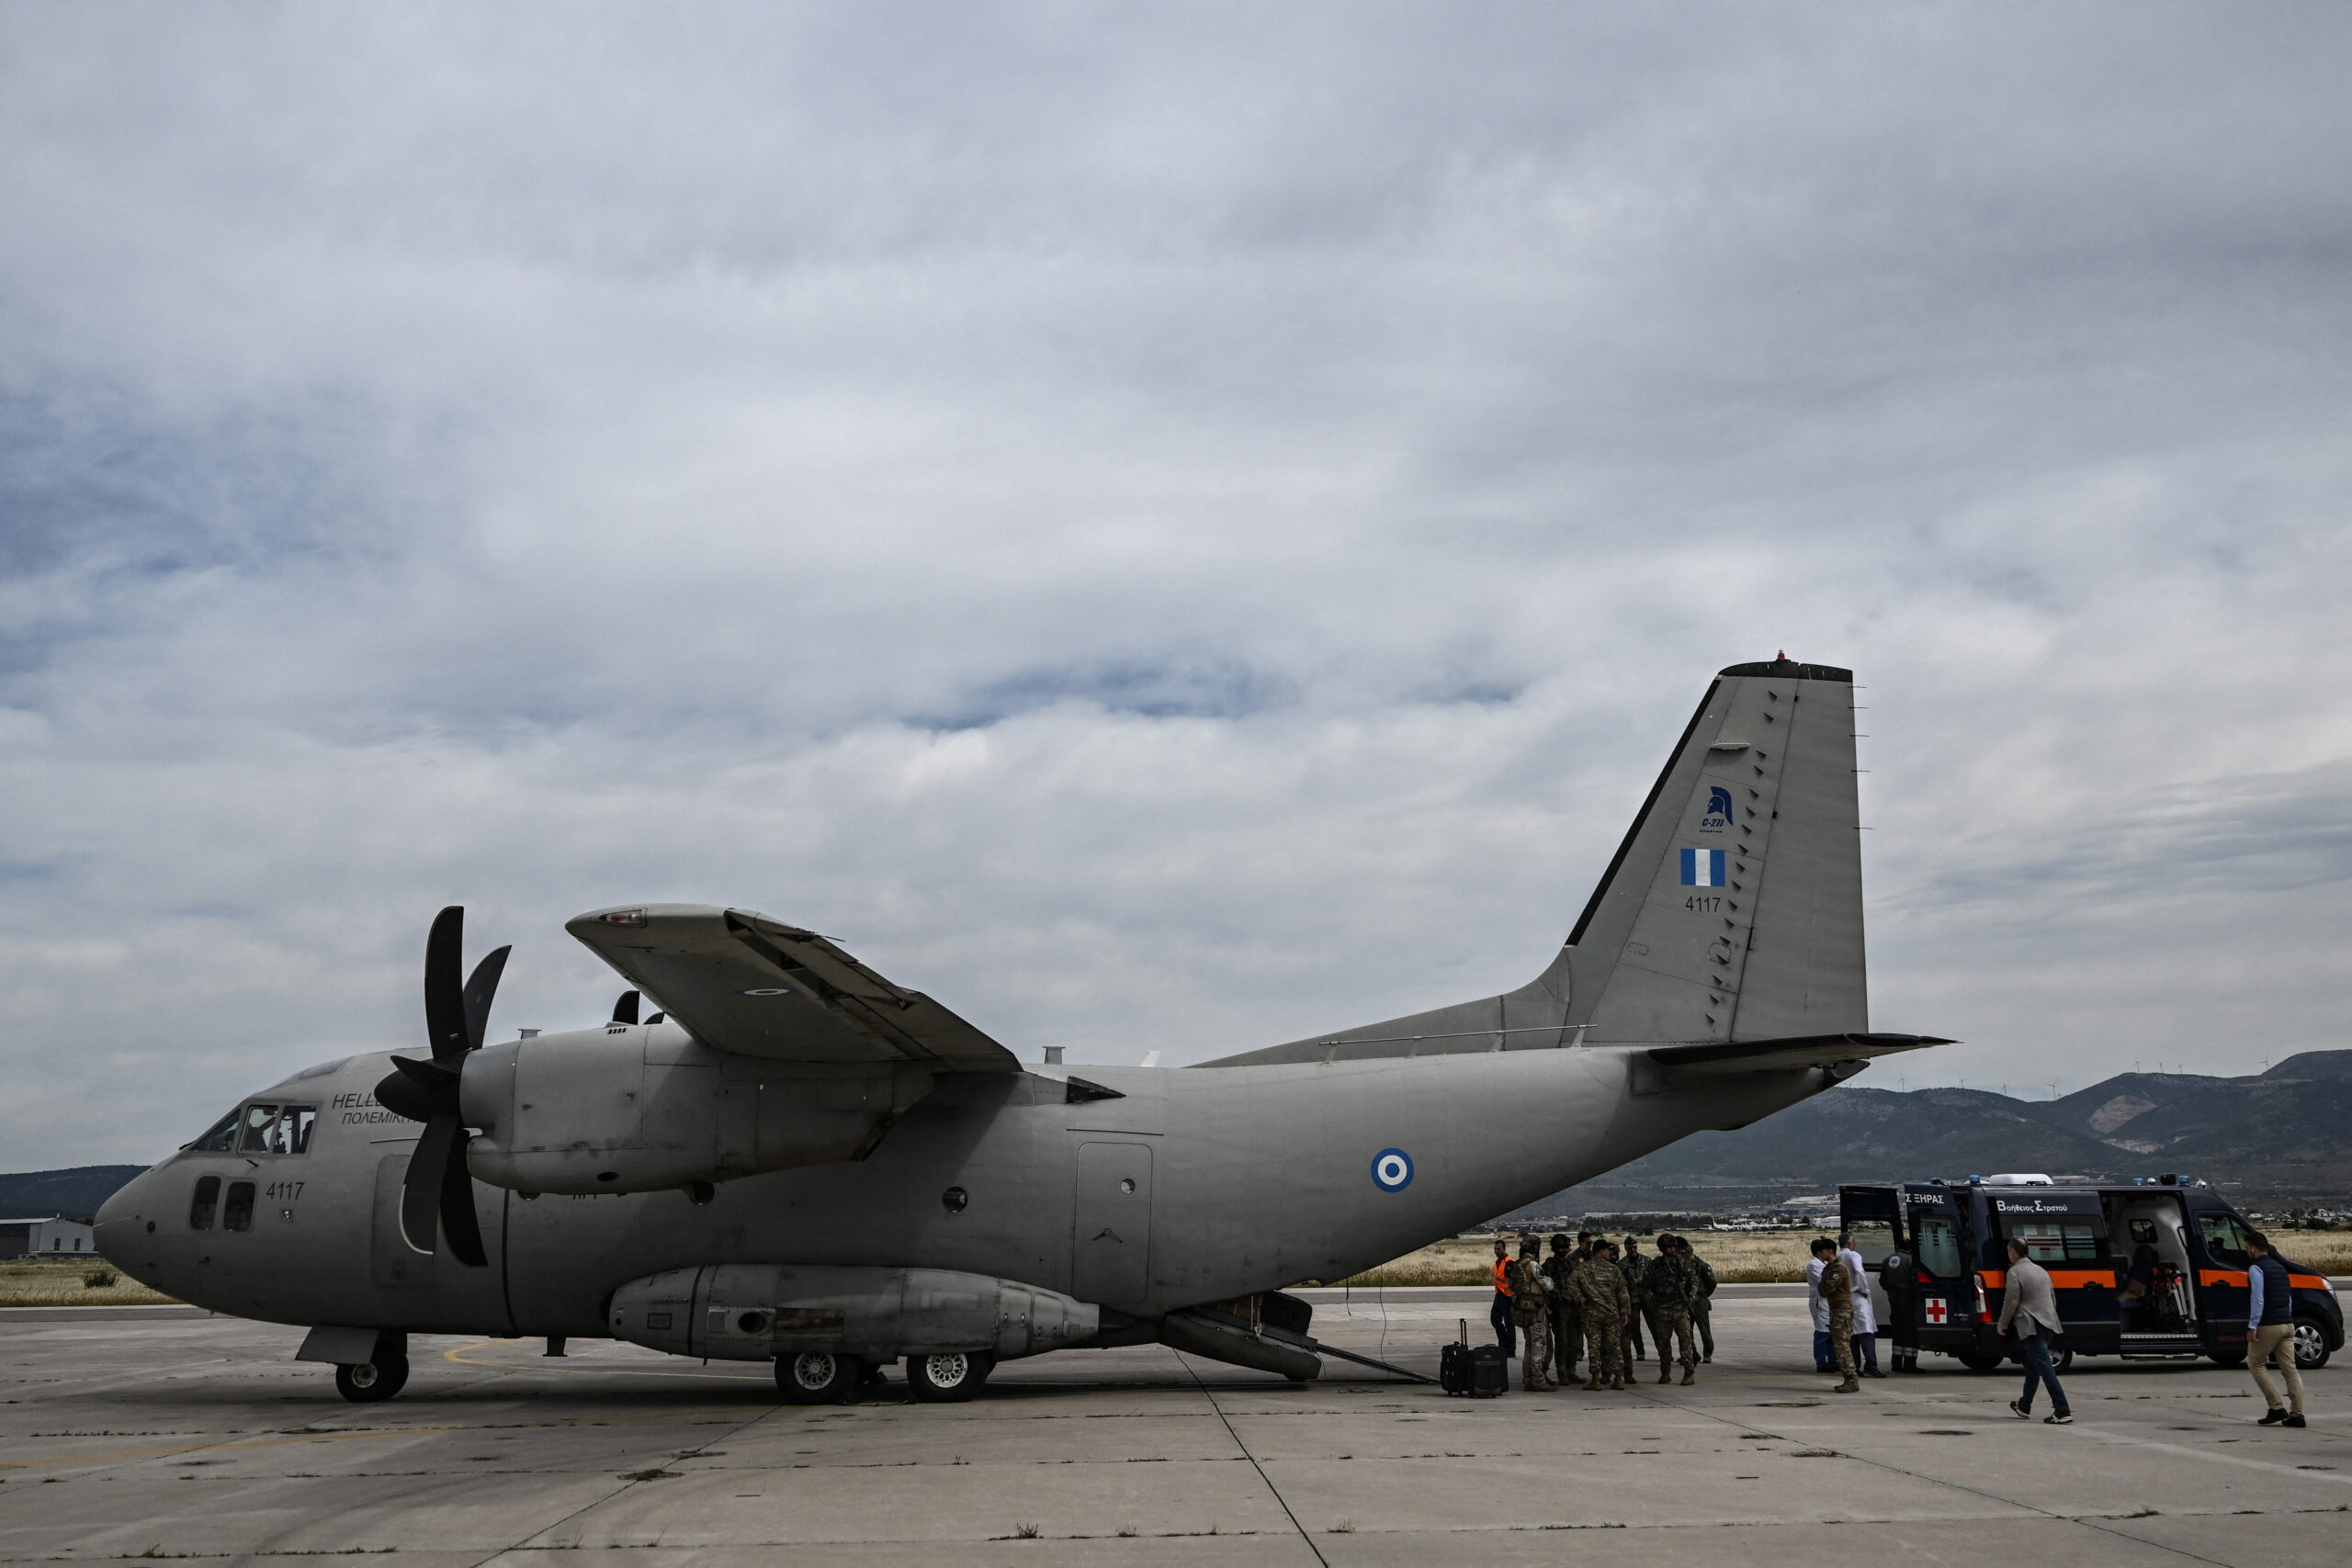 Σουδάν: Έφθασε στην Τανάγρα το δεύτερο C-27 με 34 διασωθέντες – Αναχώρησε άλλο αεροσκάφος για Ασουάν